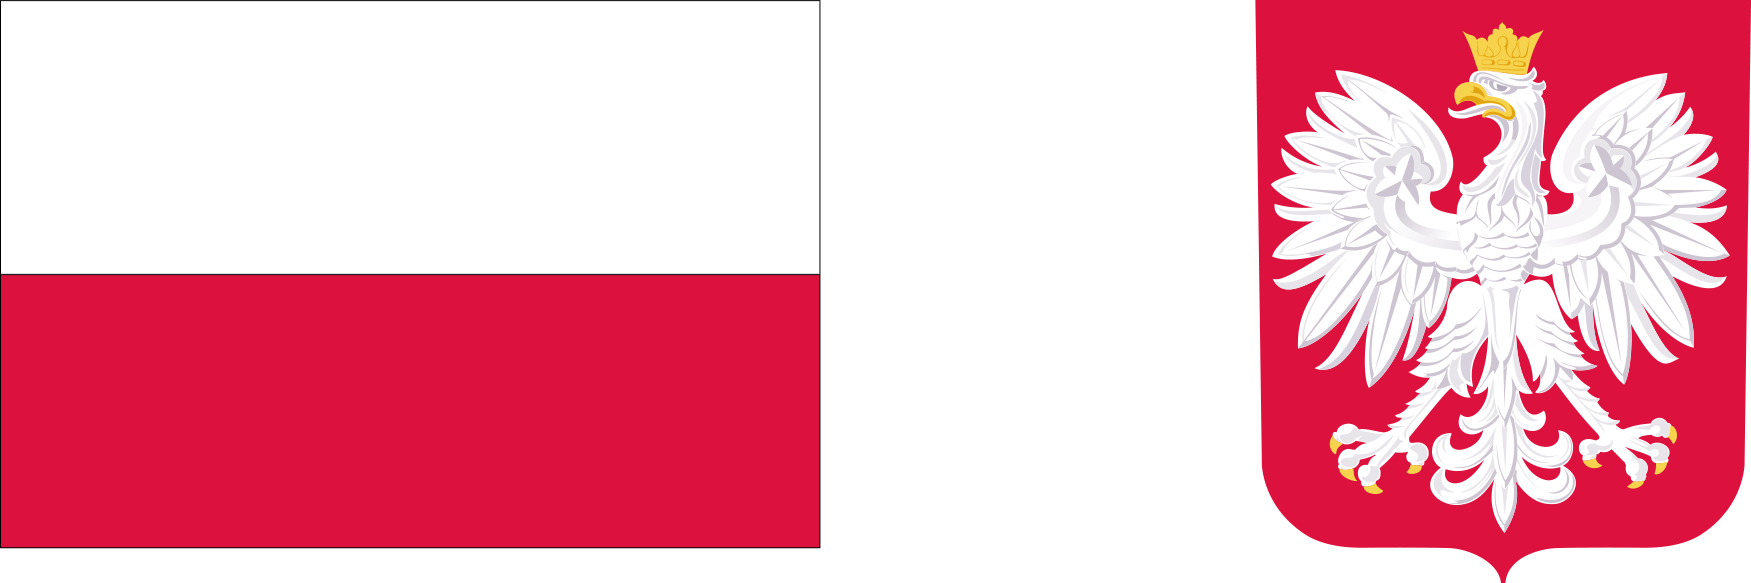 Polish flag and symbol of eagle.